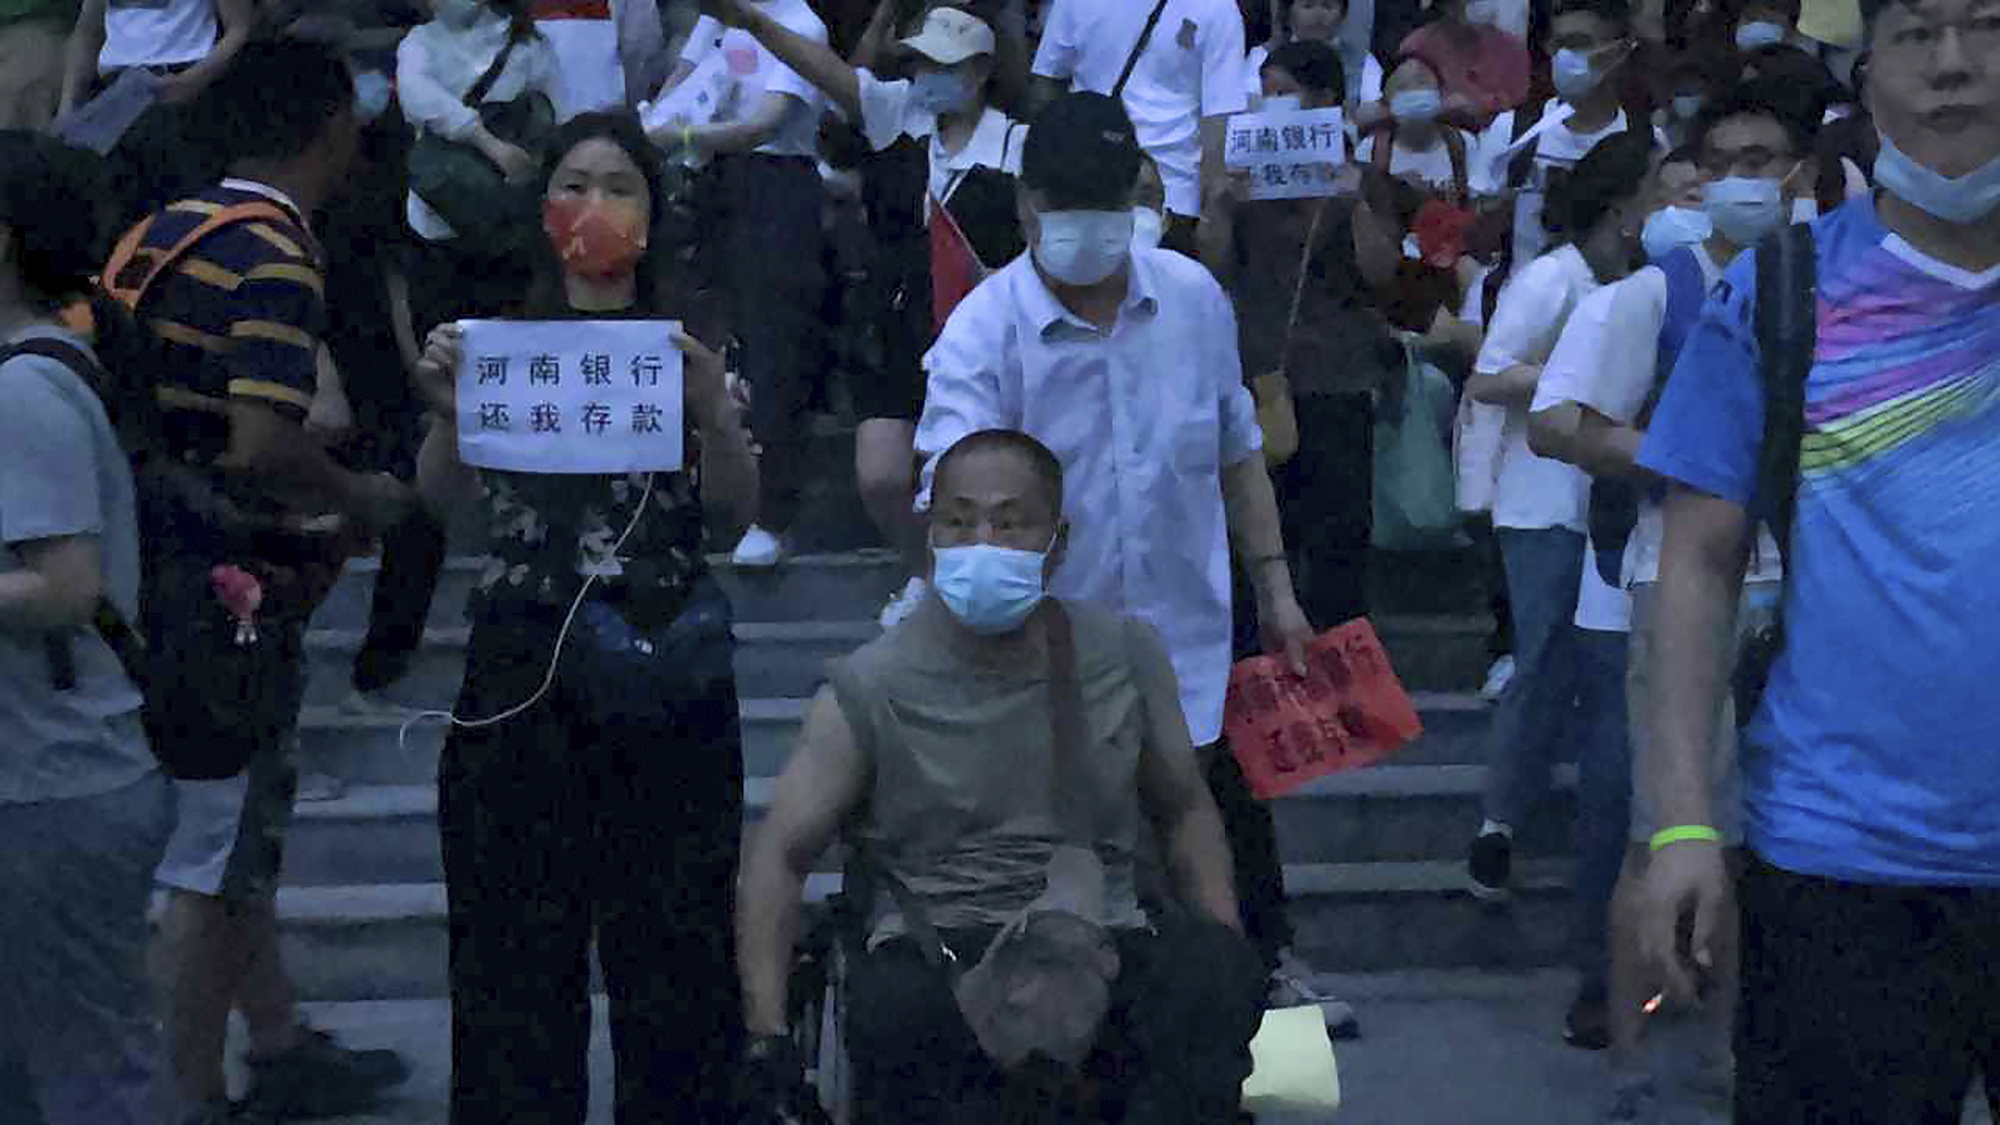 La multitudinaria protesta en Zhengzhou el pasado 10 de julio. El régimen persiguió y buscó silenciar a los manifestantes. (AP Photo)